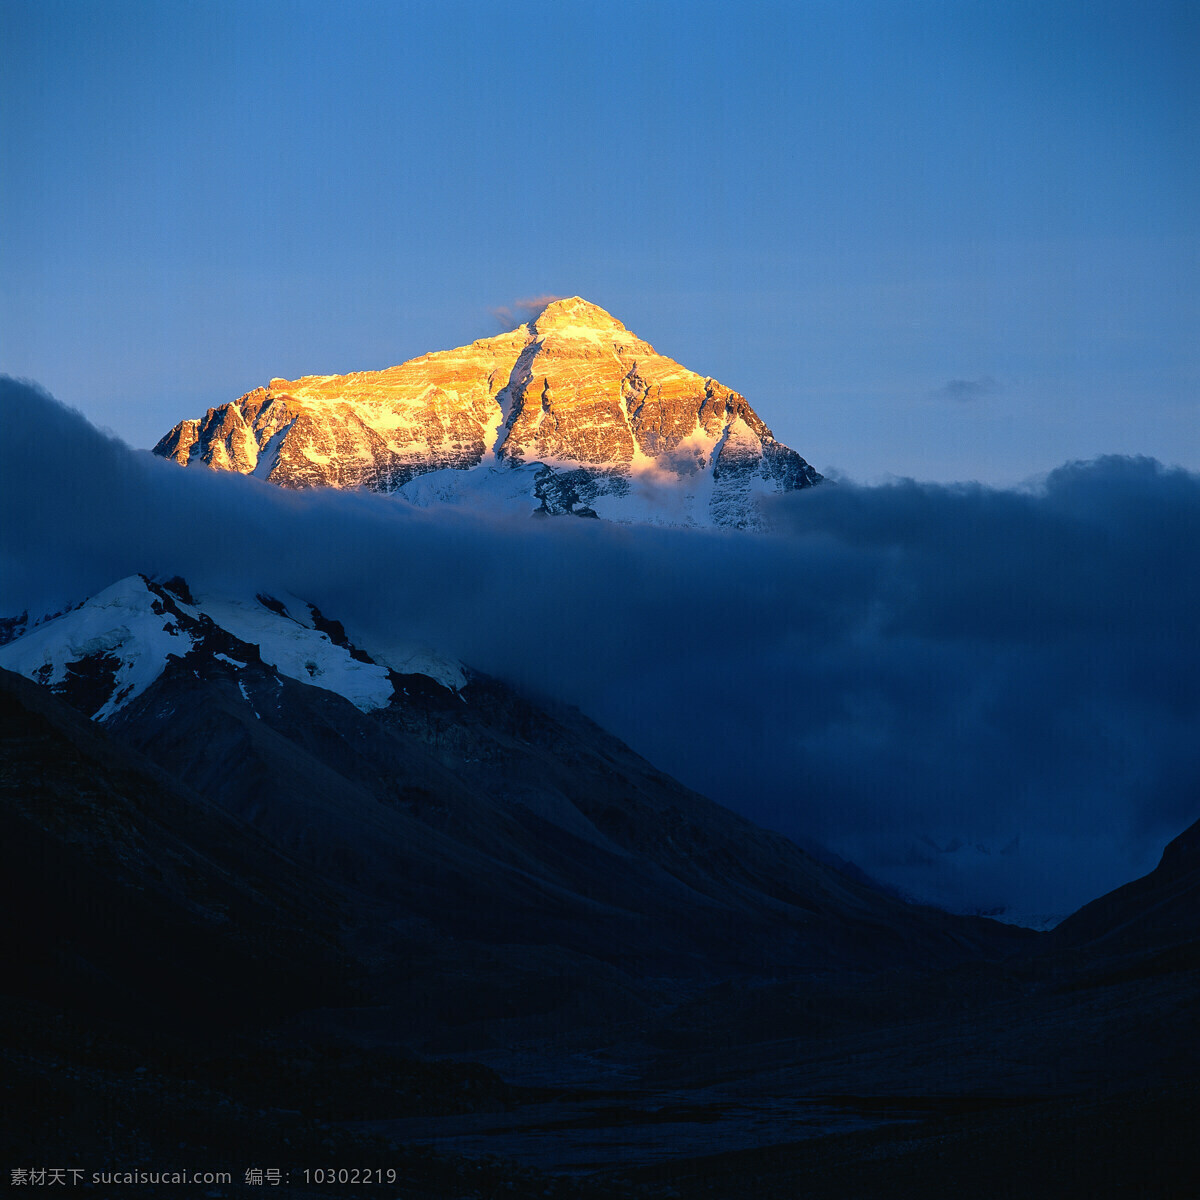 珠穆朗玛峰 风景图片 山峰 积雪 云层 阳光照耀 喜马拉雅山脉 定日 日喀则 西藏 景点 风景 300 国内旅游胜地 国内旅游 旅游摄影